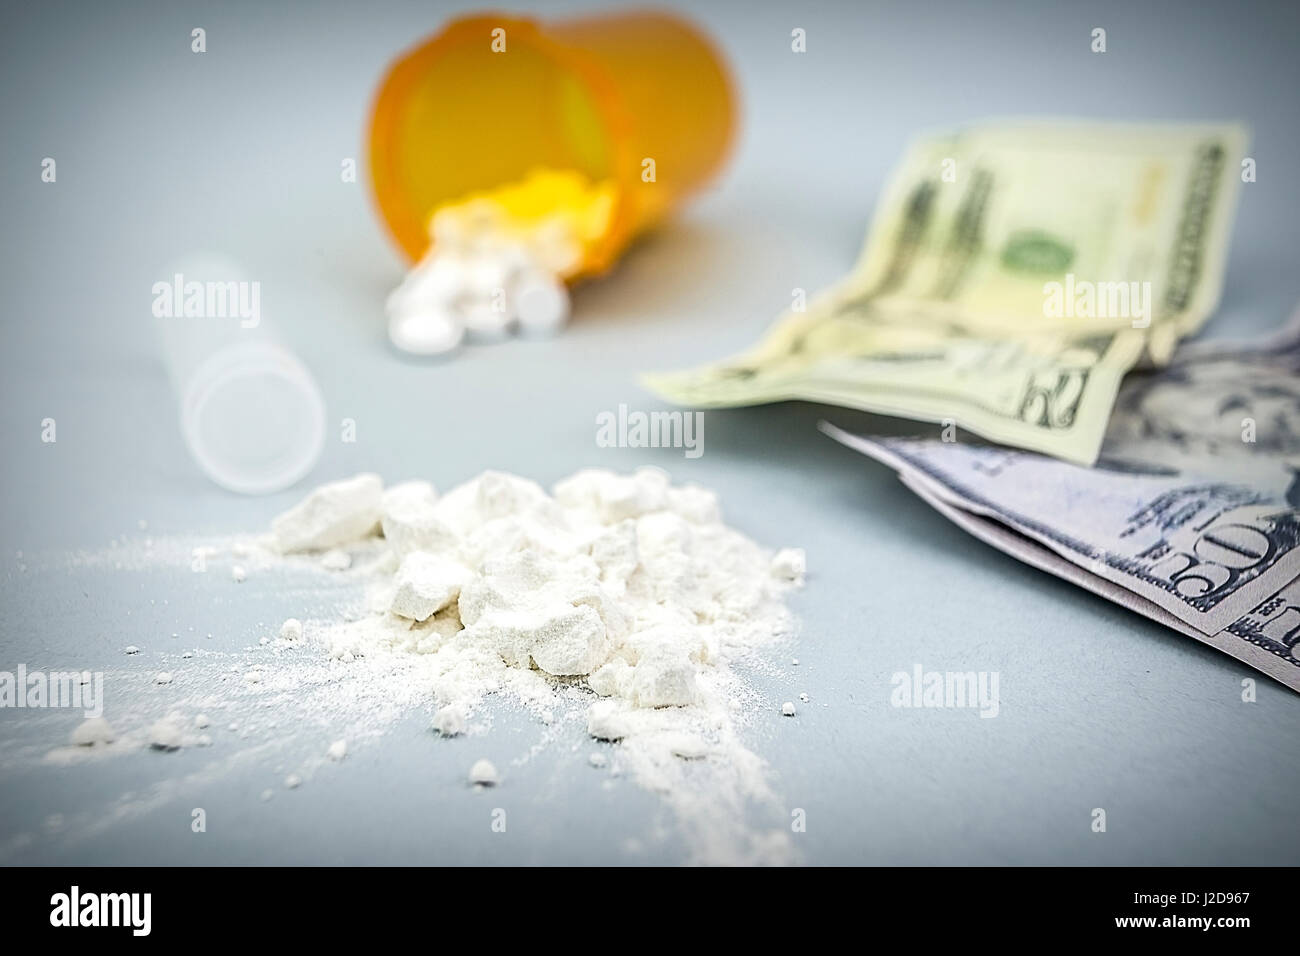 La cocaïne en poudre le long du pieu avec plusieurs billets dollar Banque D'Images